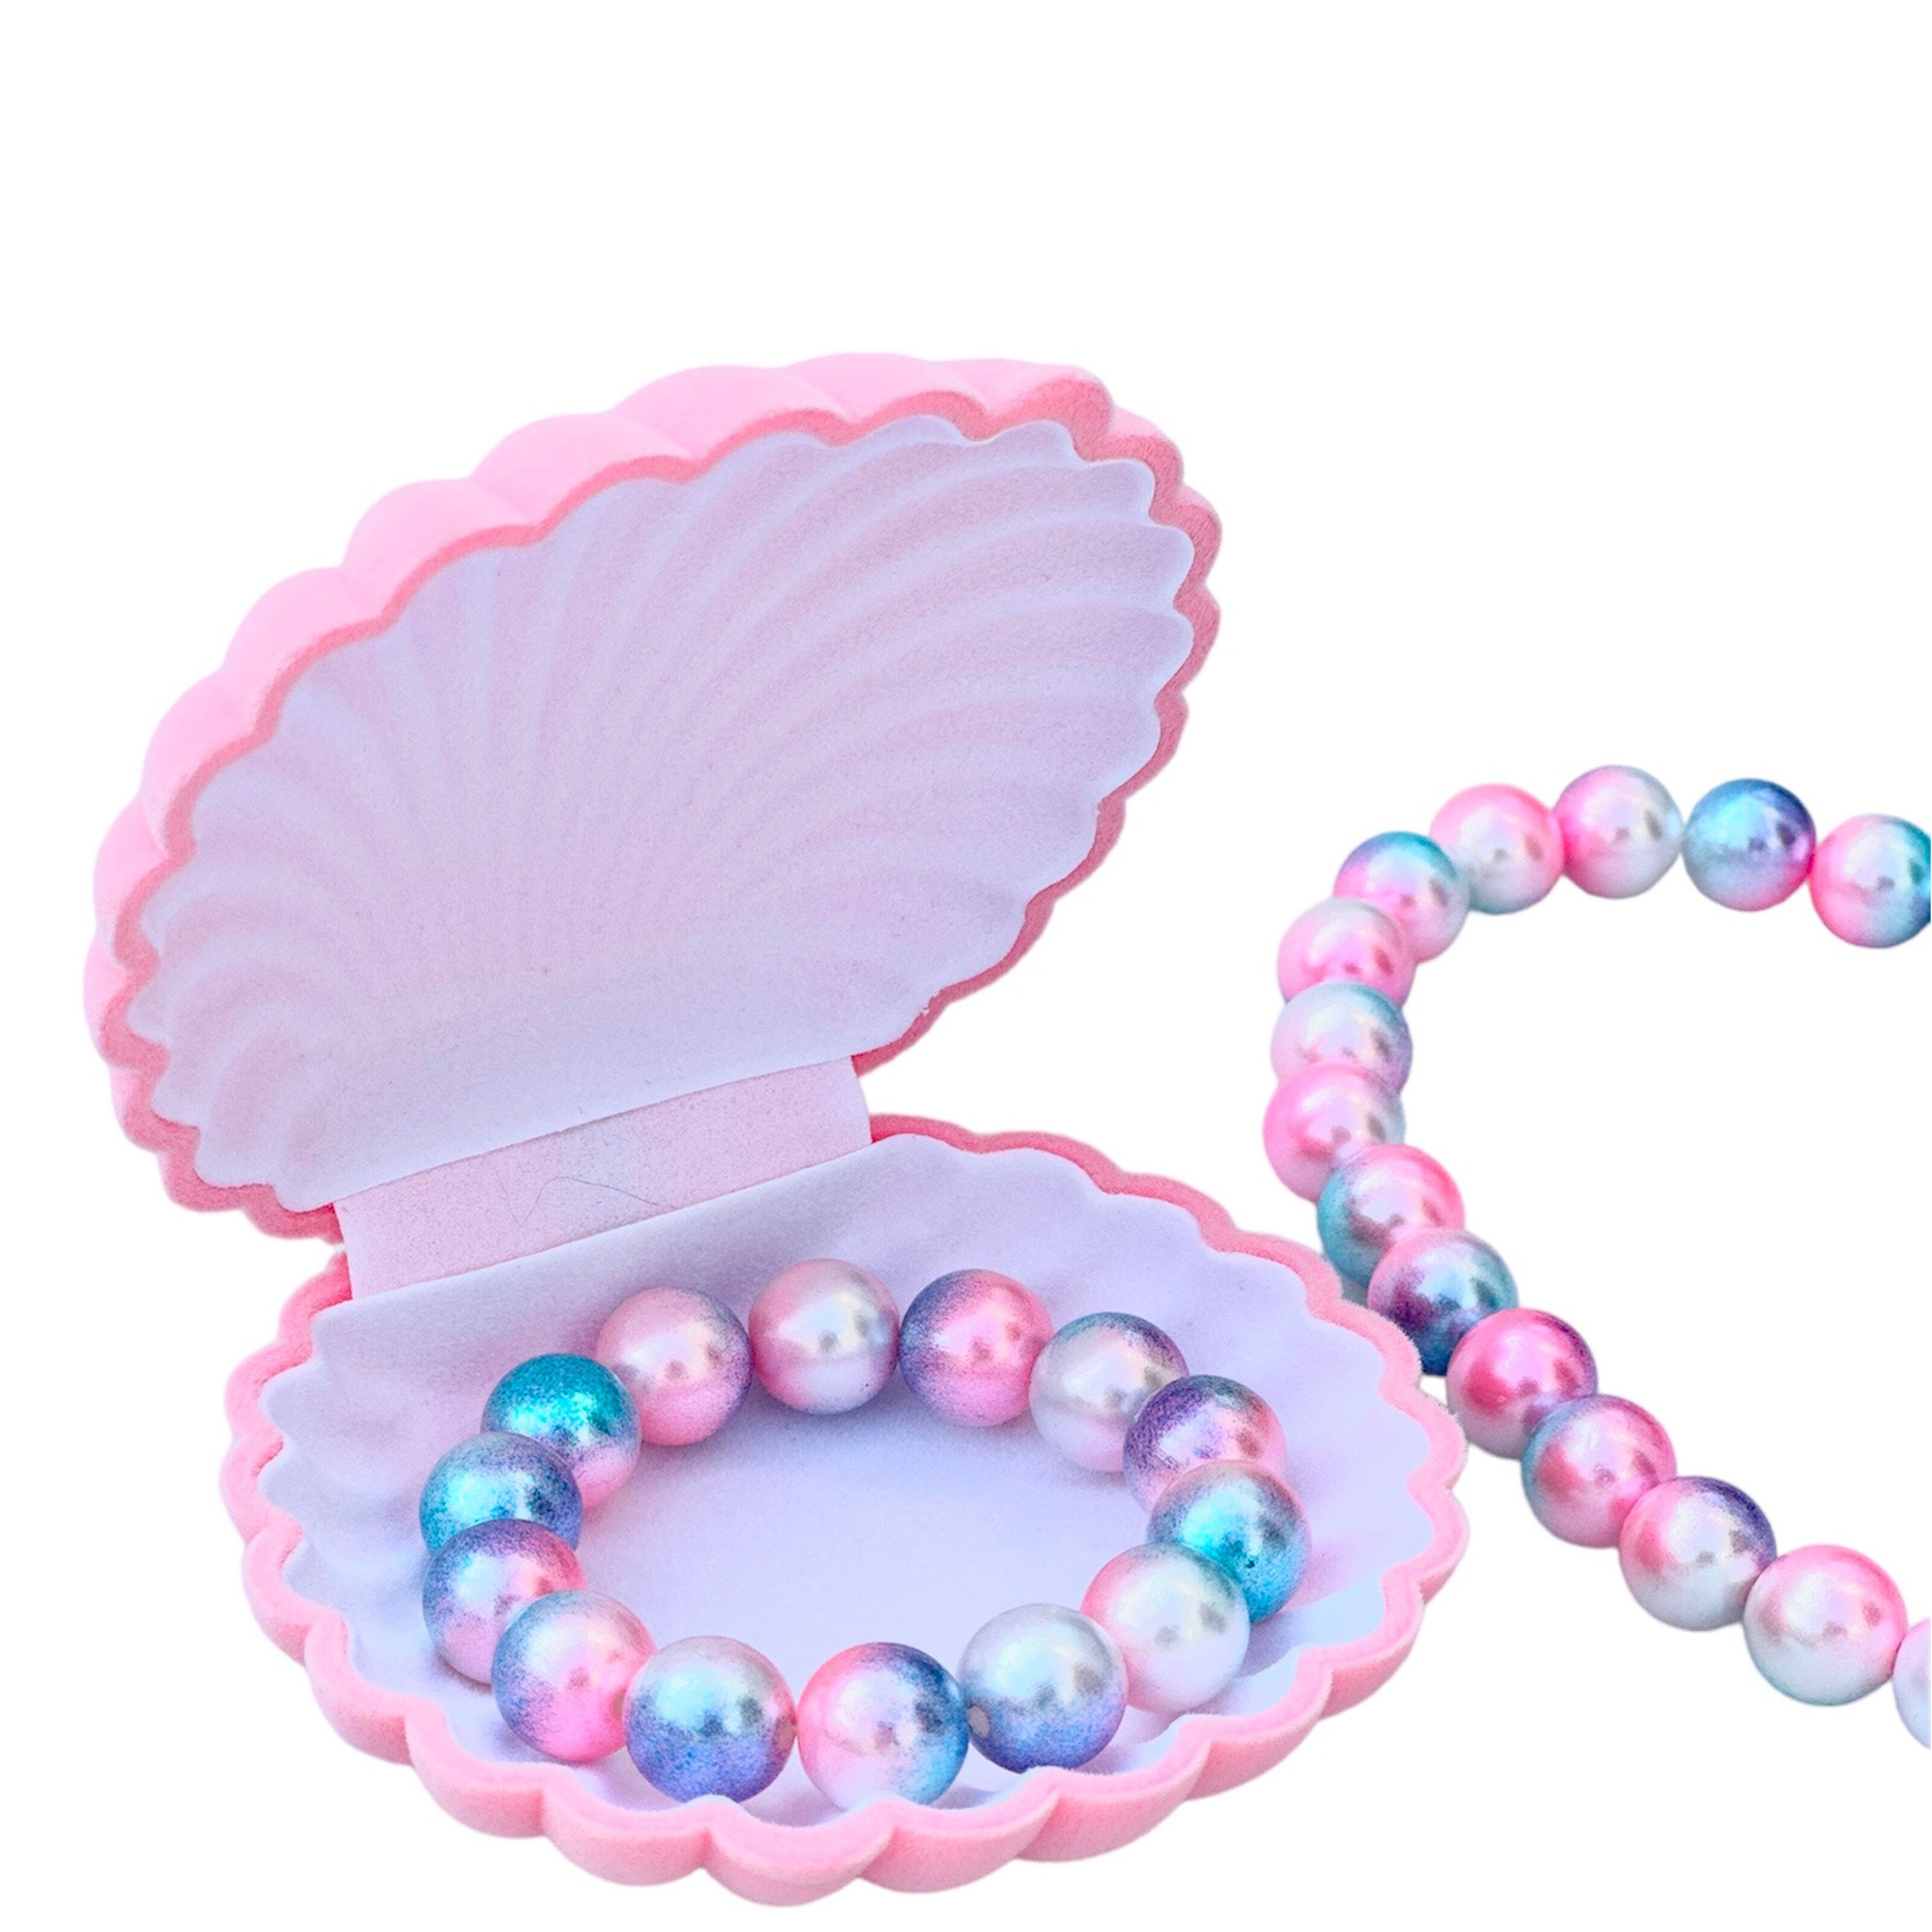 Les Perles De Cheveux - Ratatam Site Officiel